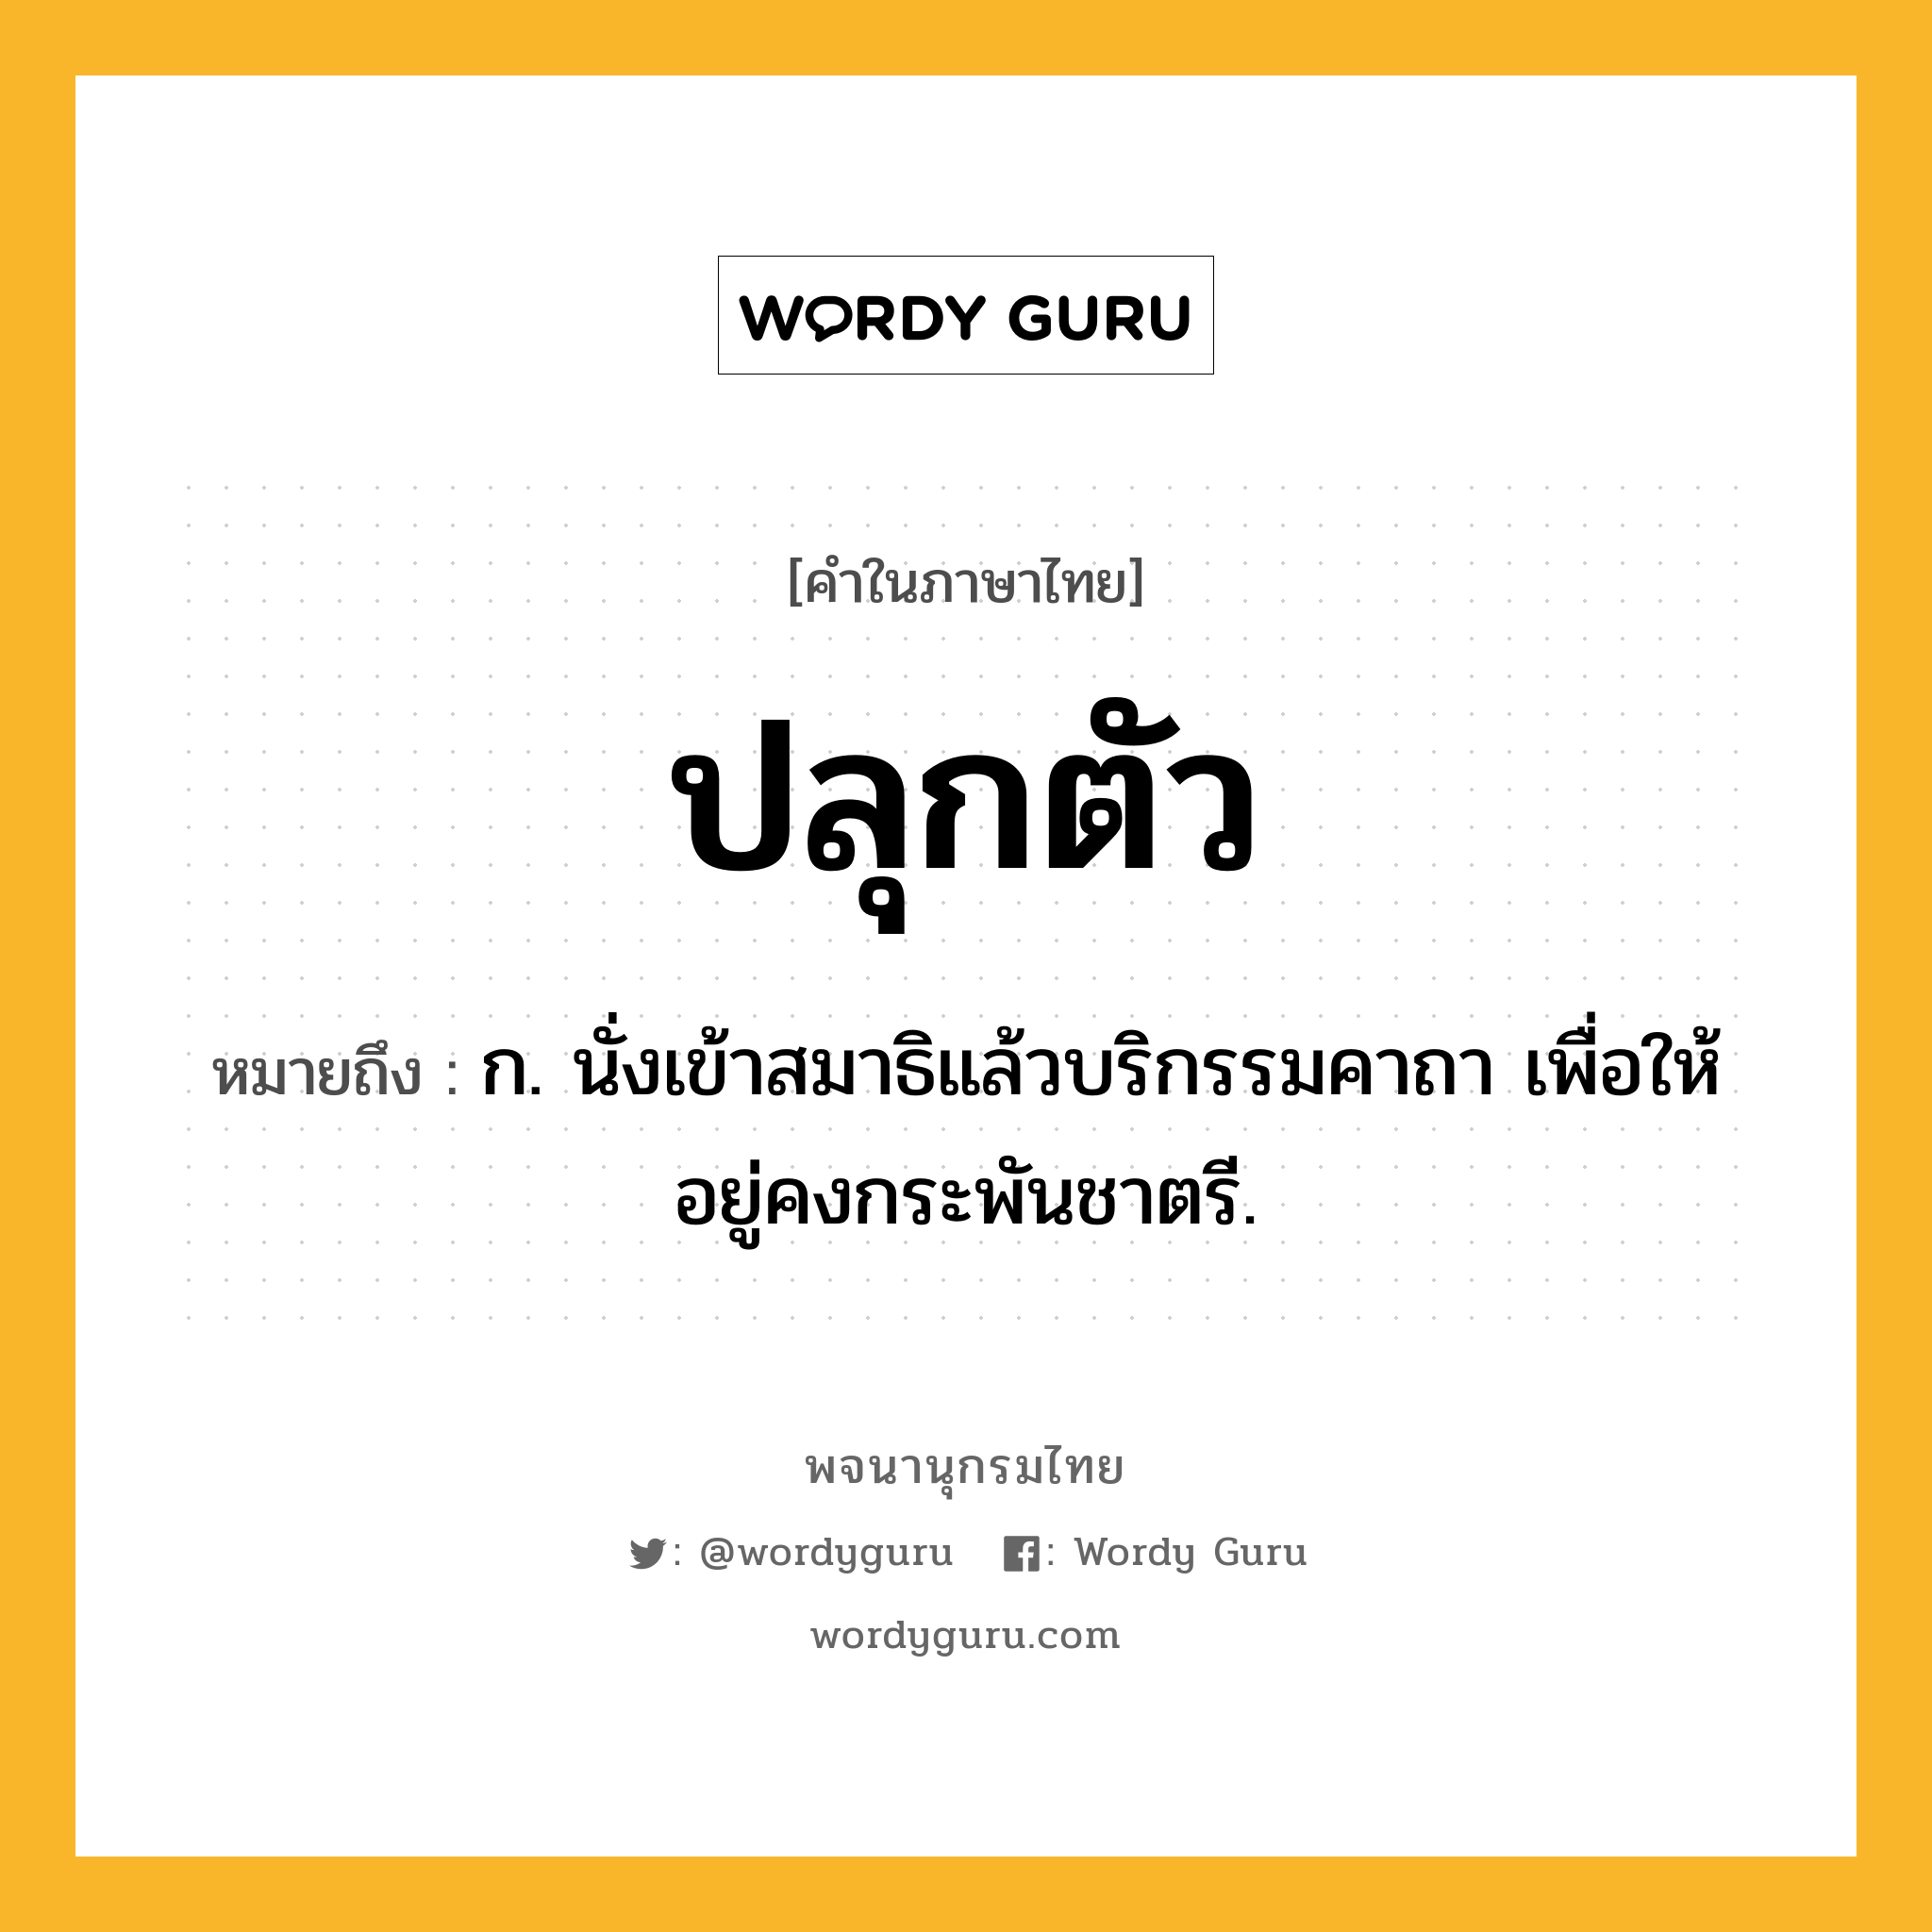 ปลุกตัว ความหมาย หมายถึงอะไร?, คำในภาษาไทย ปลุกตัว หมายถึง ก. นั่งเข้าสมาธิแล้วบริกรรมคาถา เพื่อให้อยู่คงกระพันชาตรี.